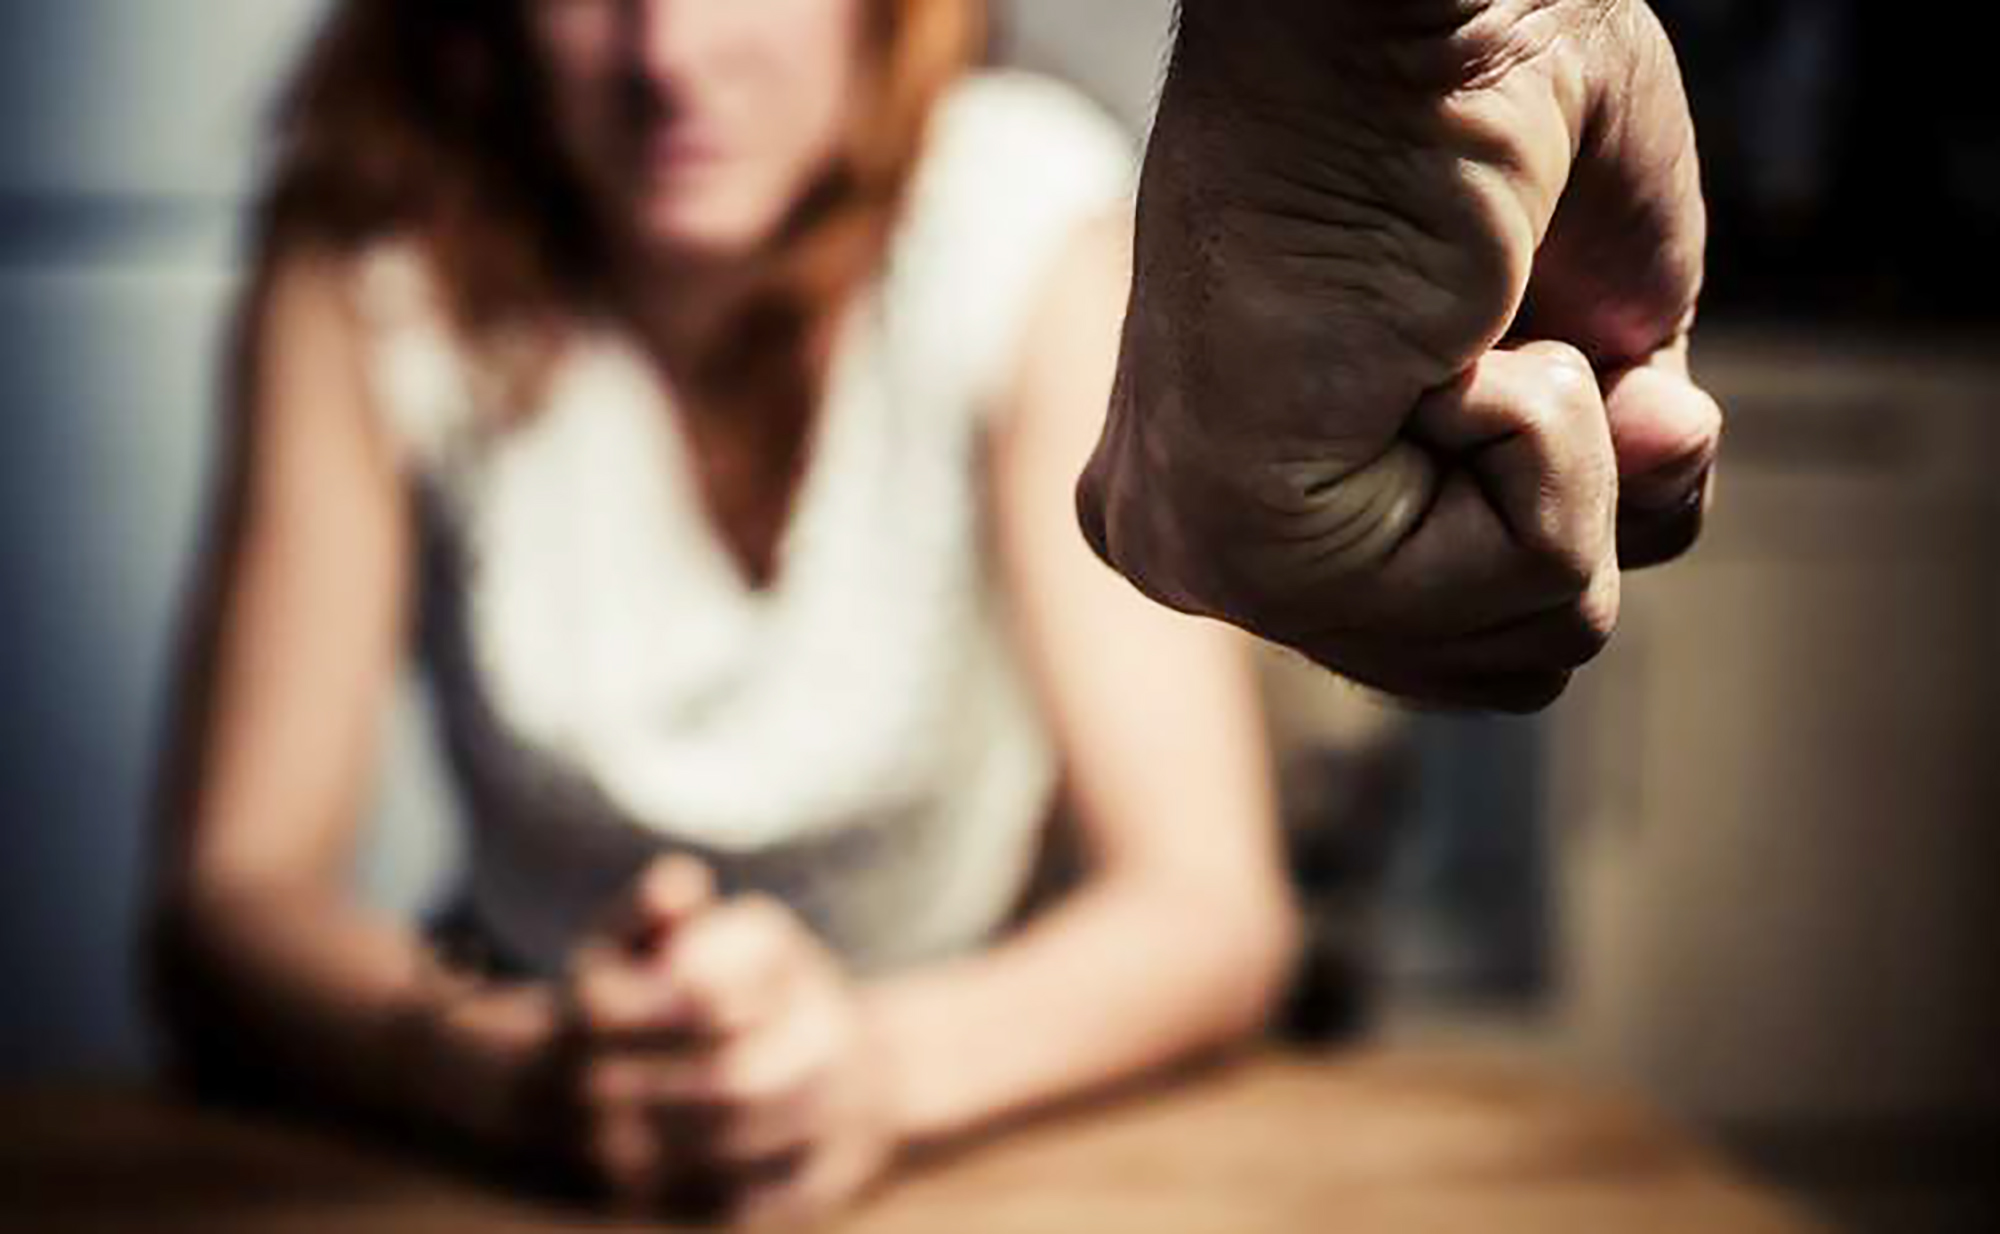 Violenza donne: la picchia e la chiude in casa, arrestato a Messina